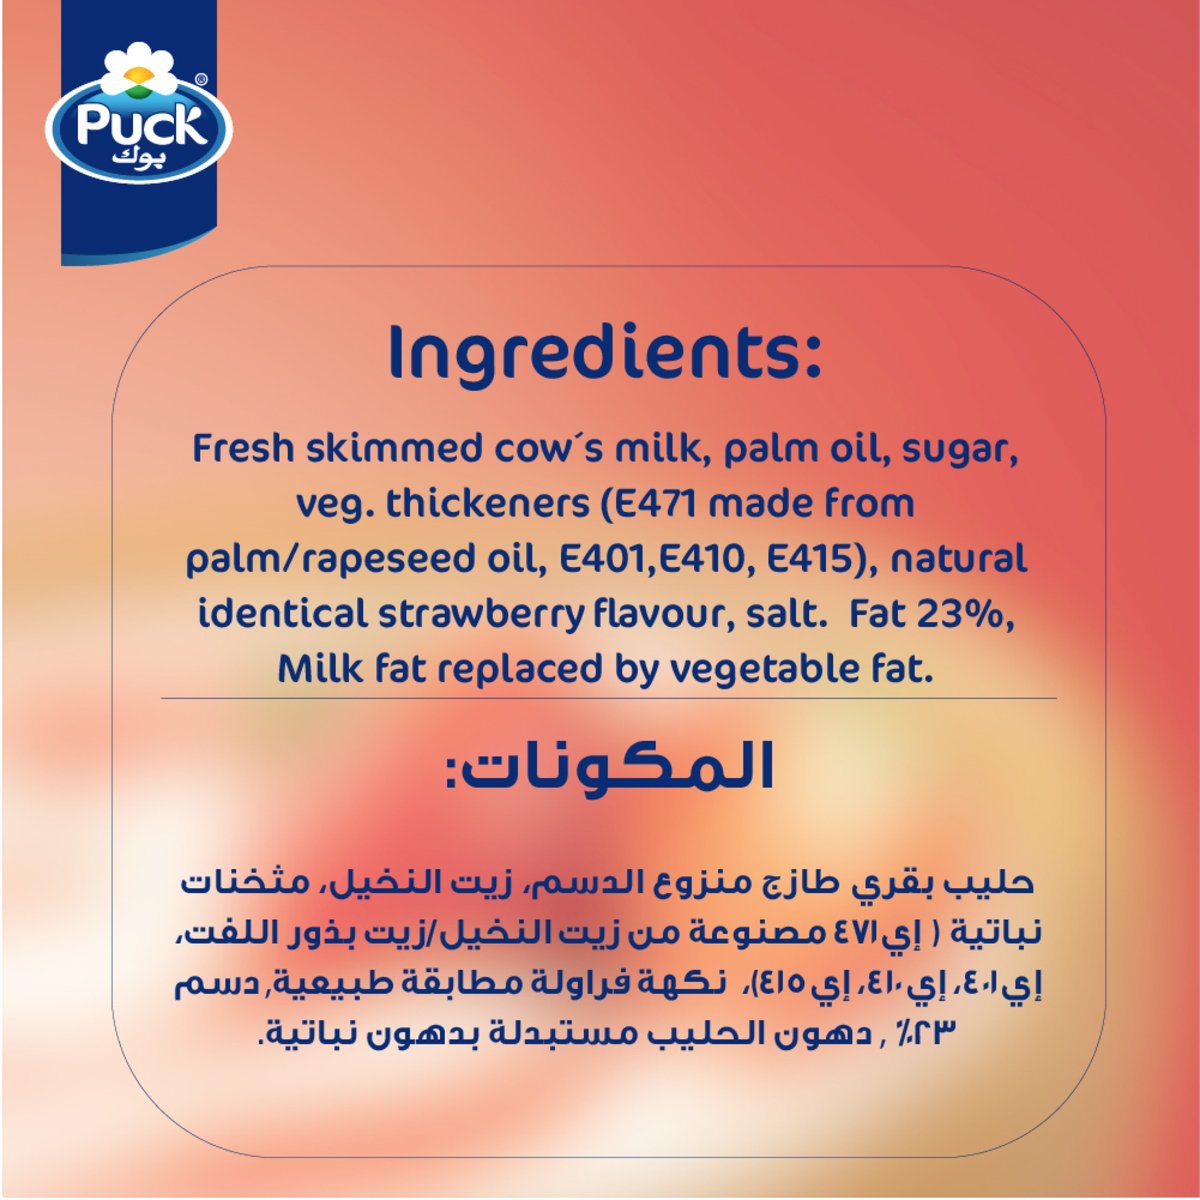 Puck Cream Strawberry Flavour 170 g